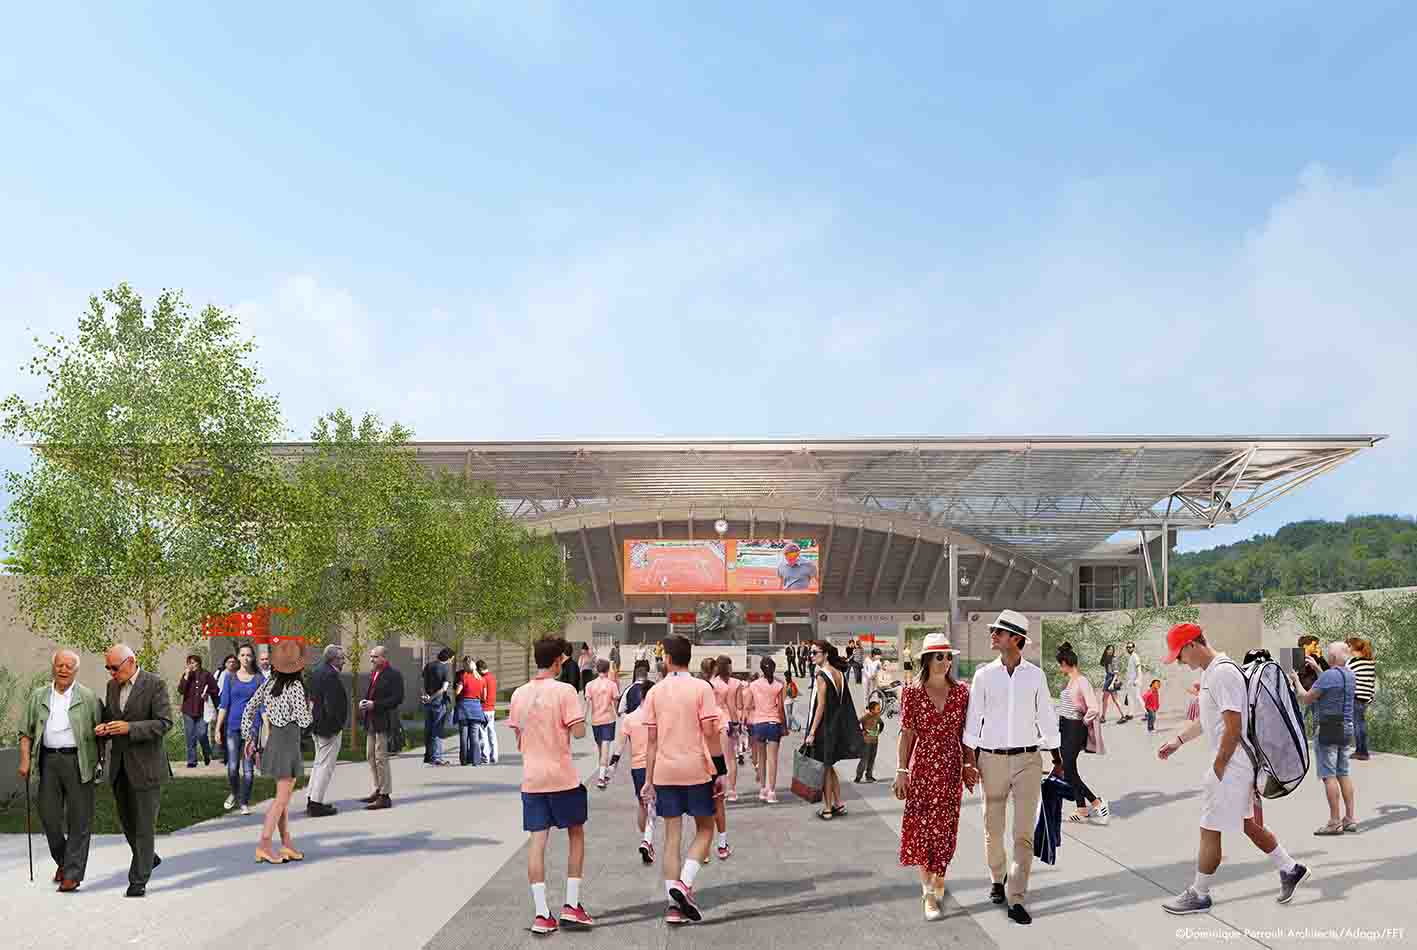 Le stade Roland-Garros se prépare pour les Jeux de - Ville de Paris